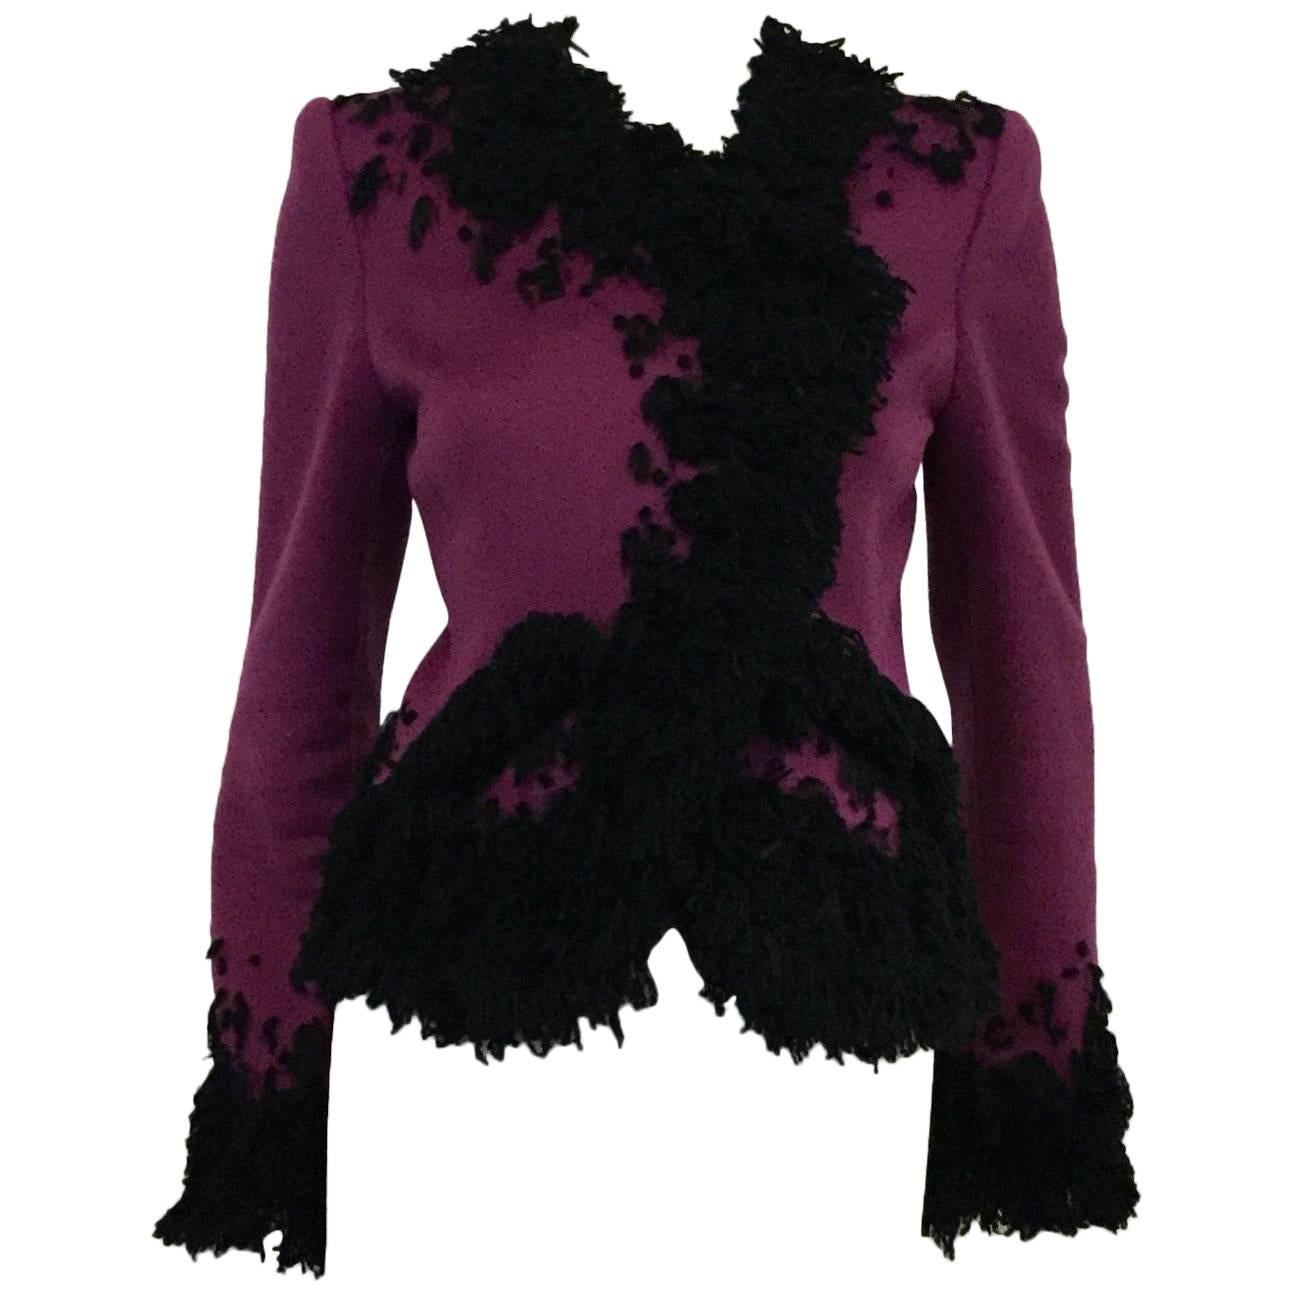 Oscar de la Renta Violet Cashmere Jacket with Black Boucle Embroidery